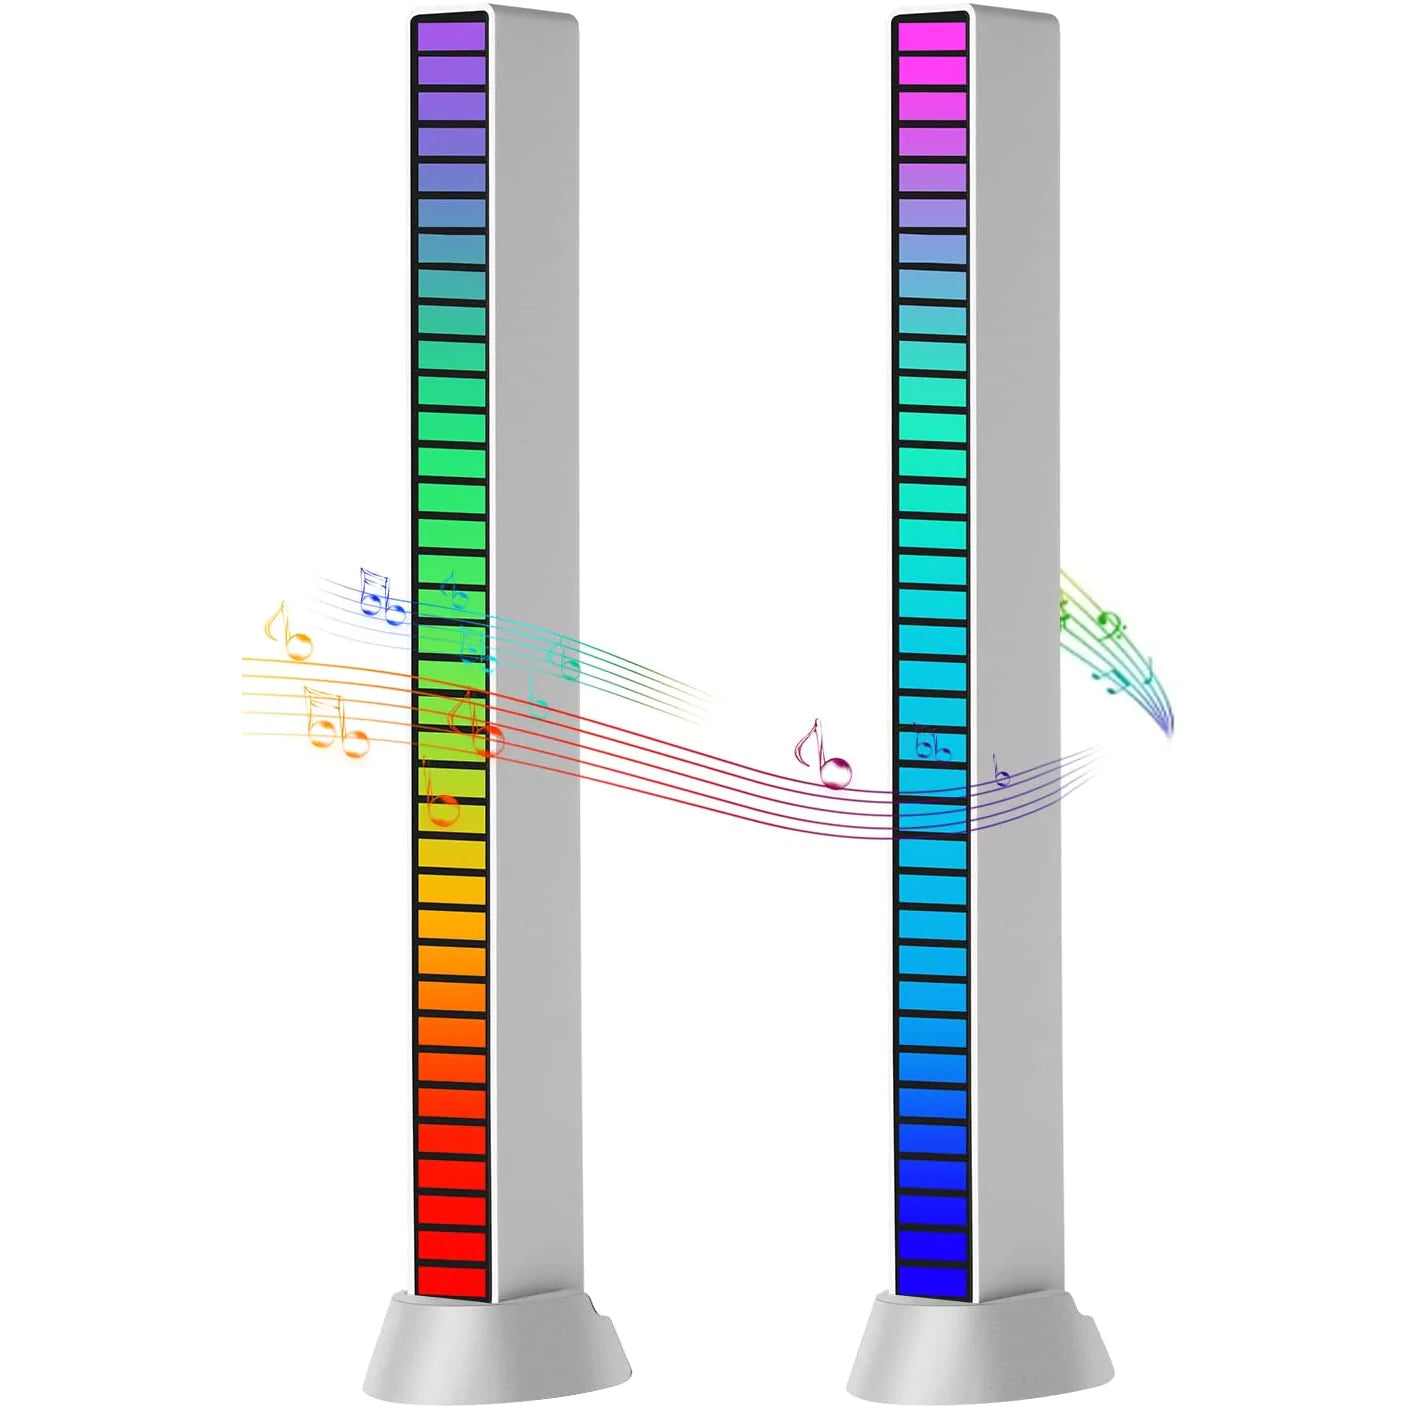 Musik Atmosphäre Rhythmus Licht, 2 Pack RGB Sprachaktivierte Pickup Rhythm  Light mit 32 RGB Bunte Farbwechsel, USB-Aufladung LED Ambient Light für Auto  Party Gaming DJ, APP-Steuerung RGB Light Bar: : Musikinstrumente 